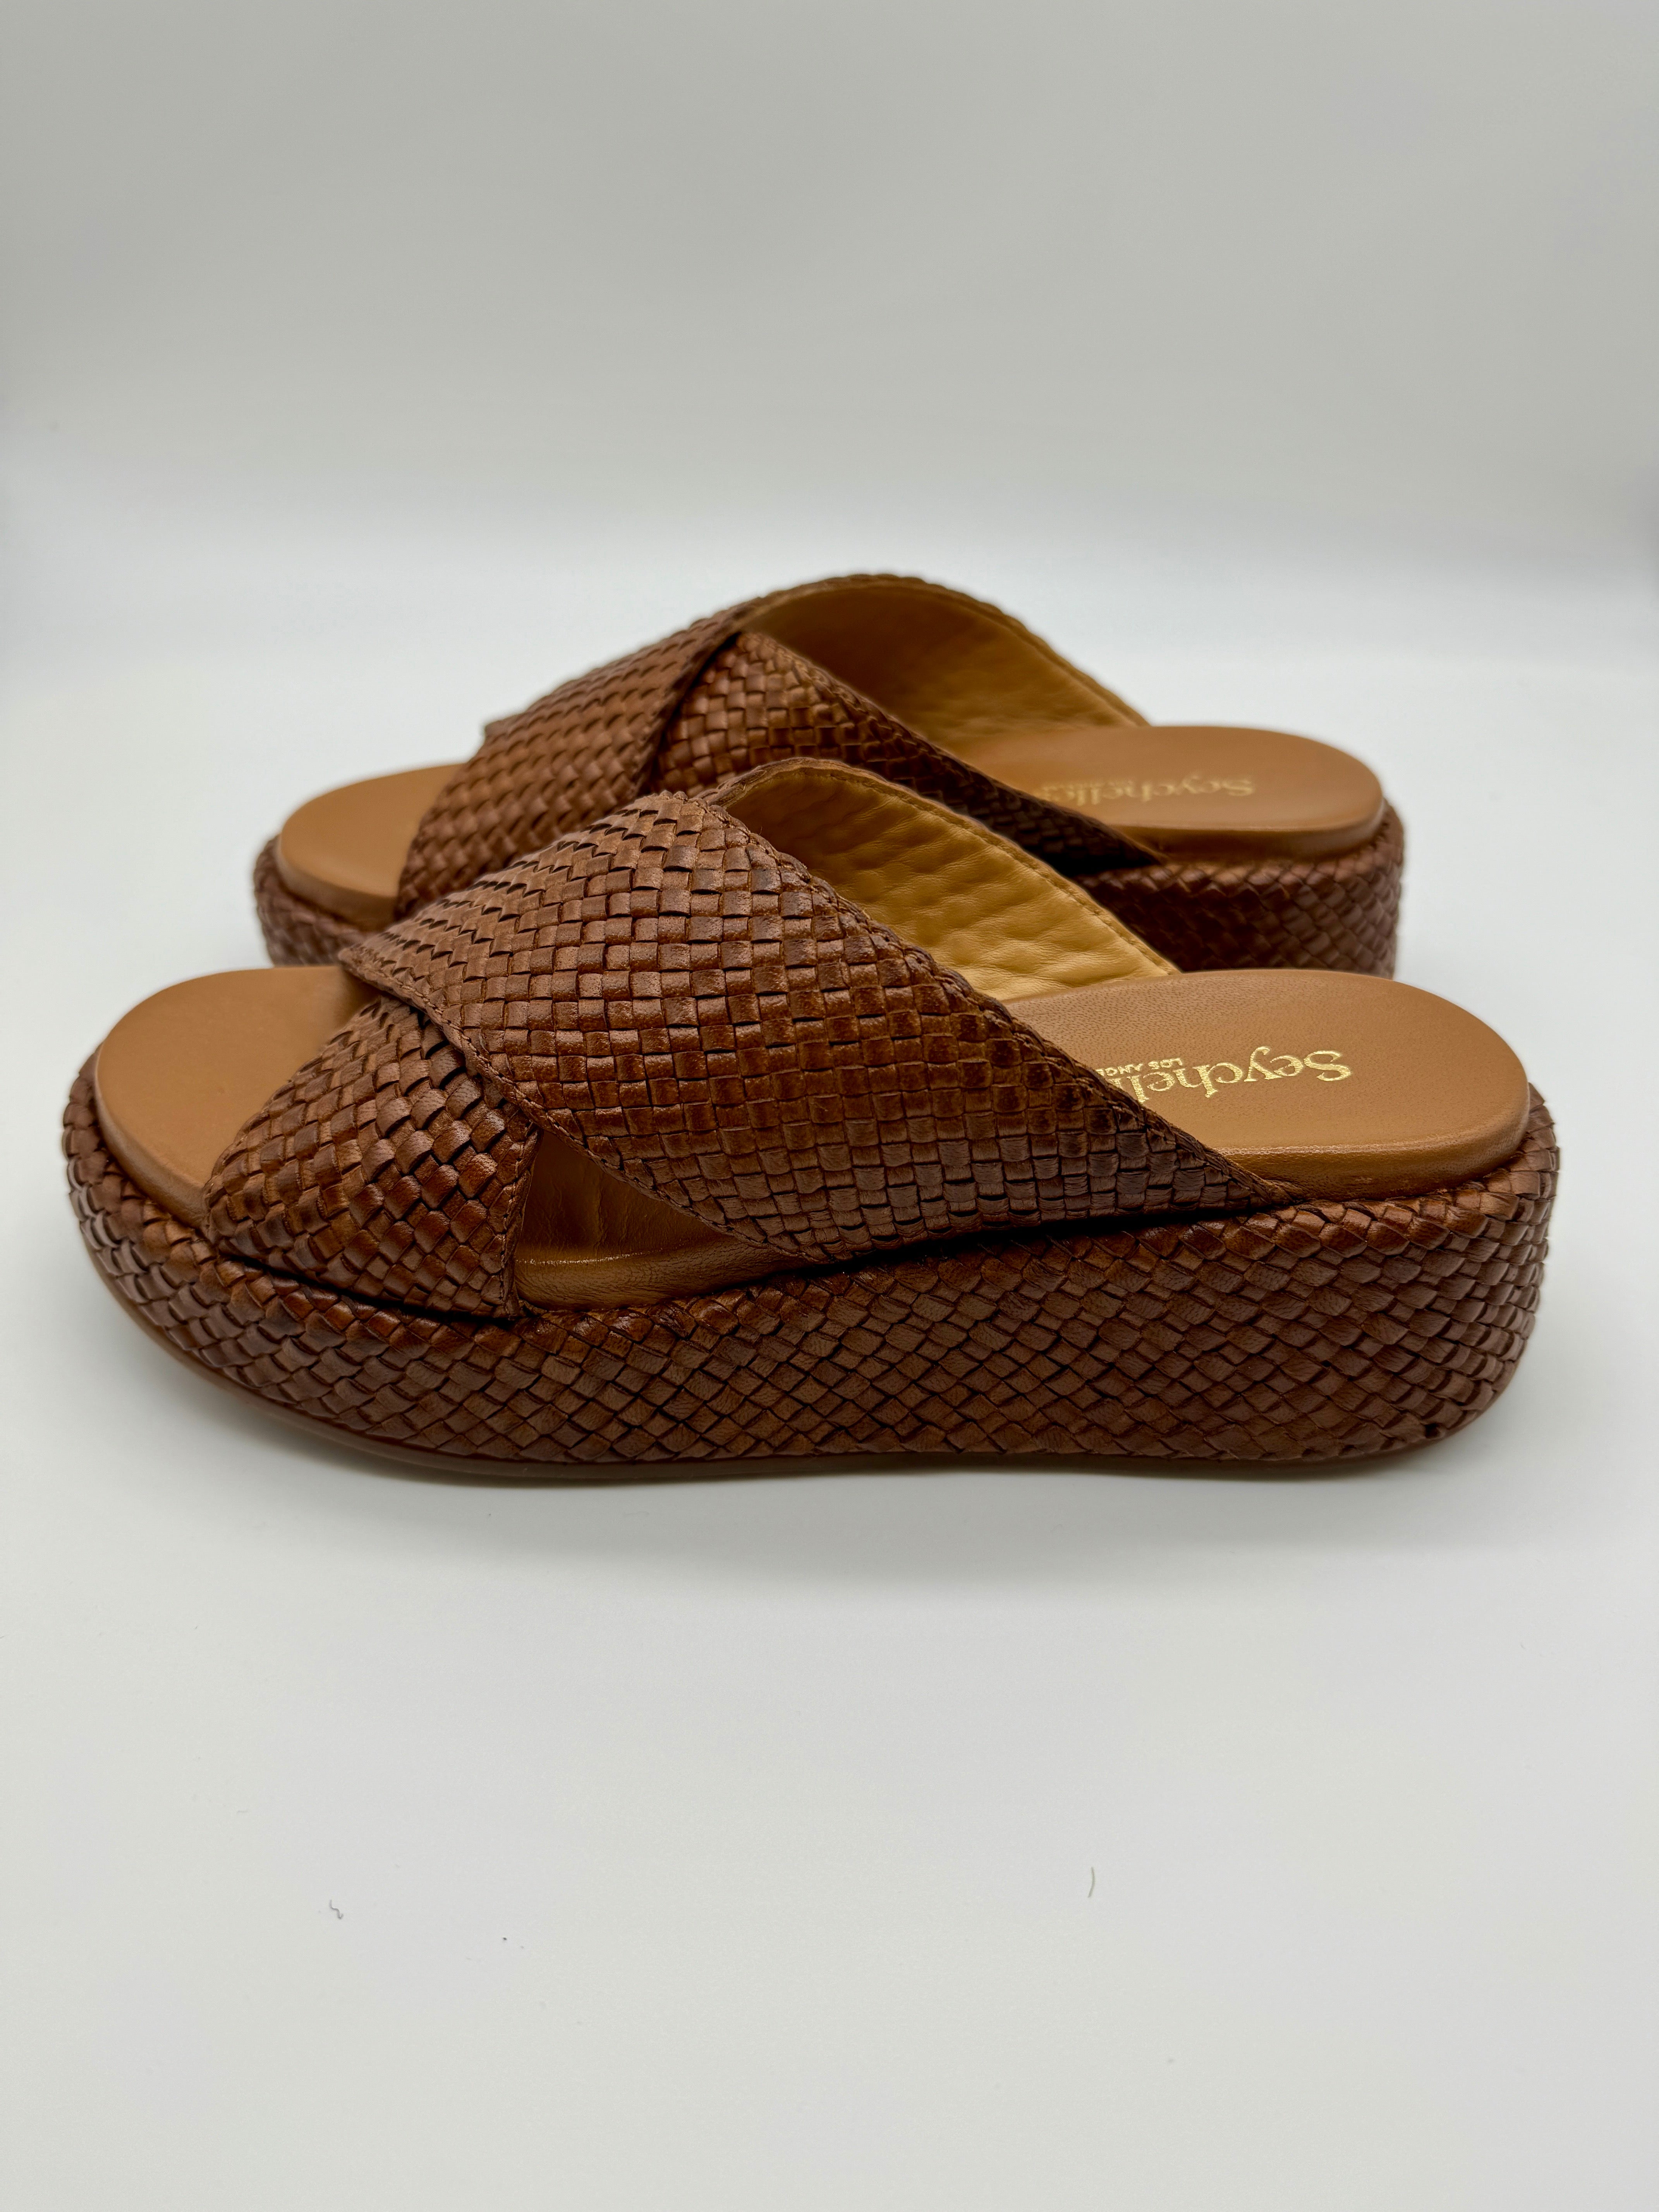 Seychelles Key West Sandals in Tan-312 Shoes-Little Bird Boutique